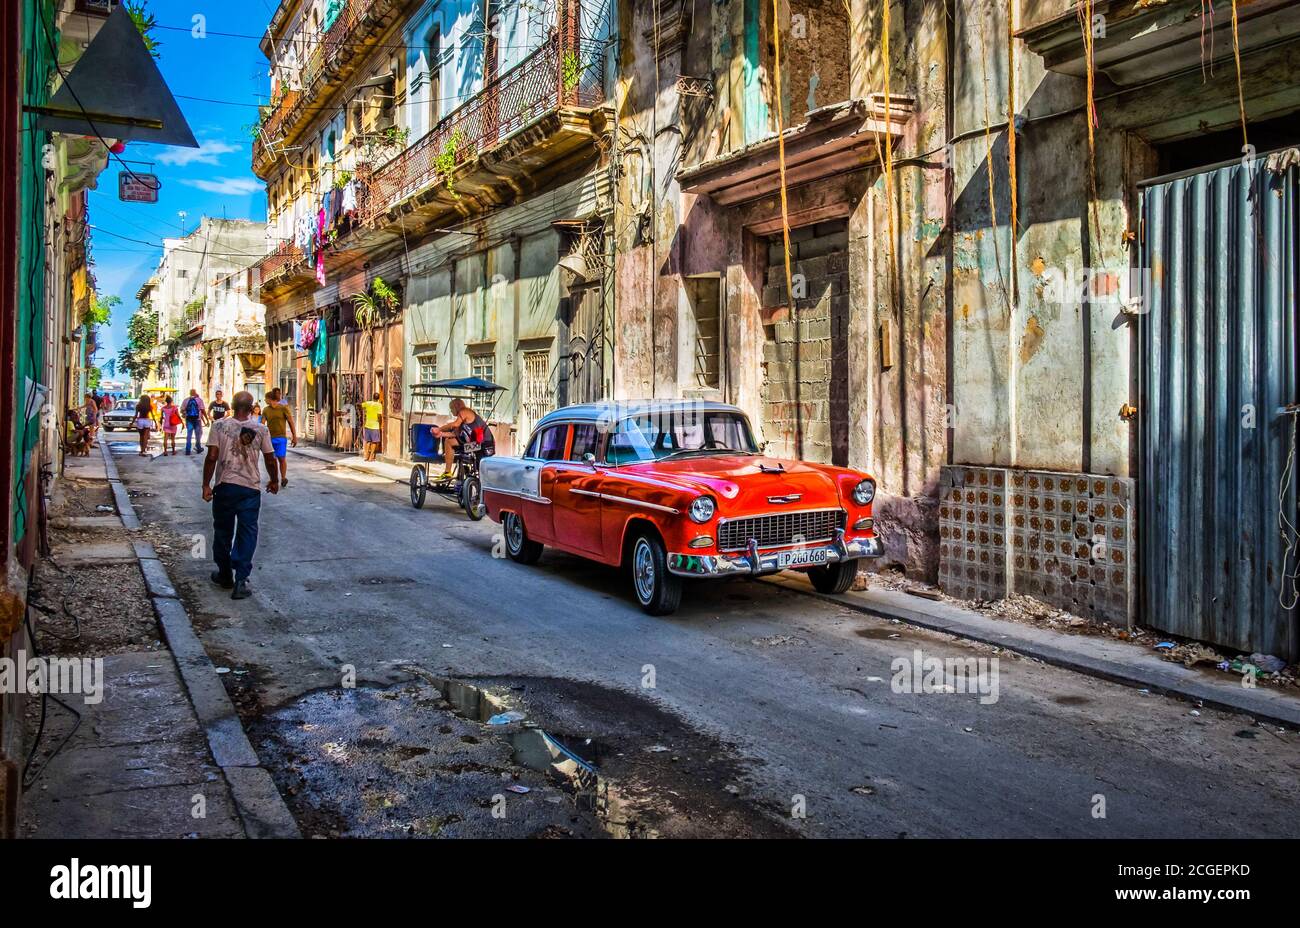 La Havane, Cuba, le 2019 juillet, scène urbaine avec une voiture Chevrolet rouge des années 50 garée dans la rue dans la partie la plus ancienne de la ville Banque D'Images